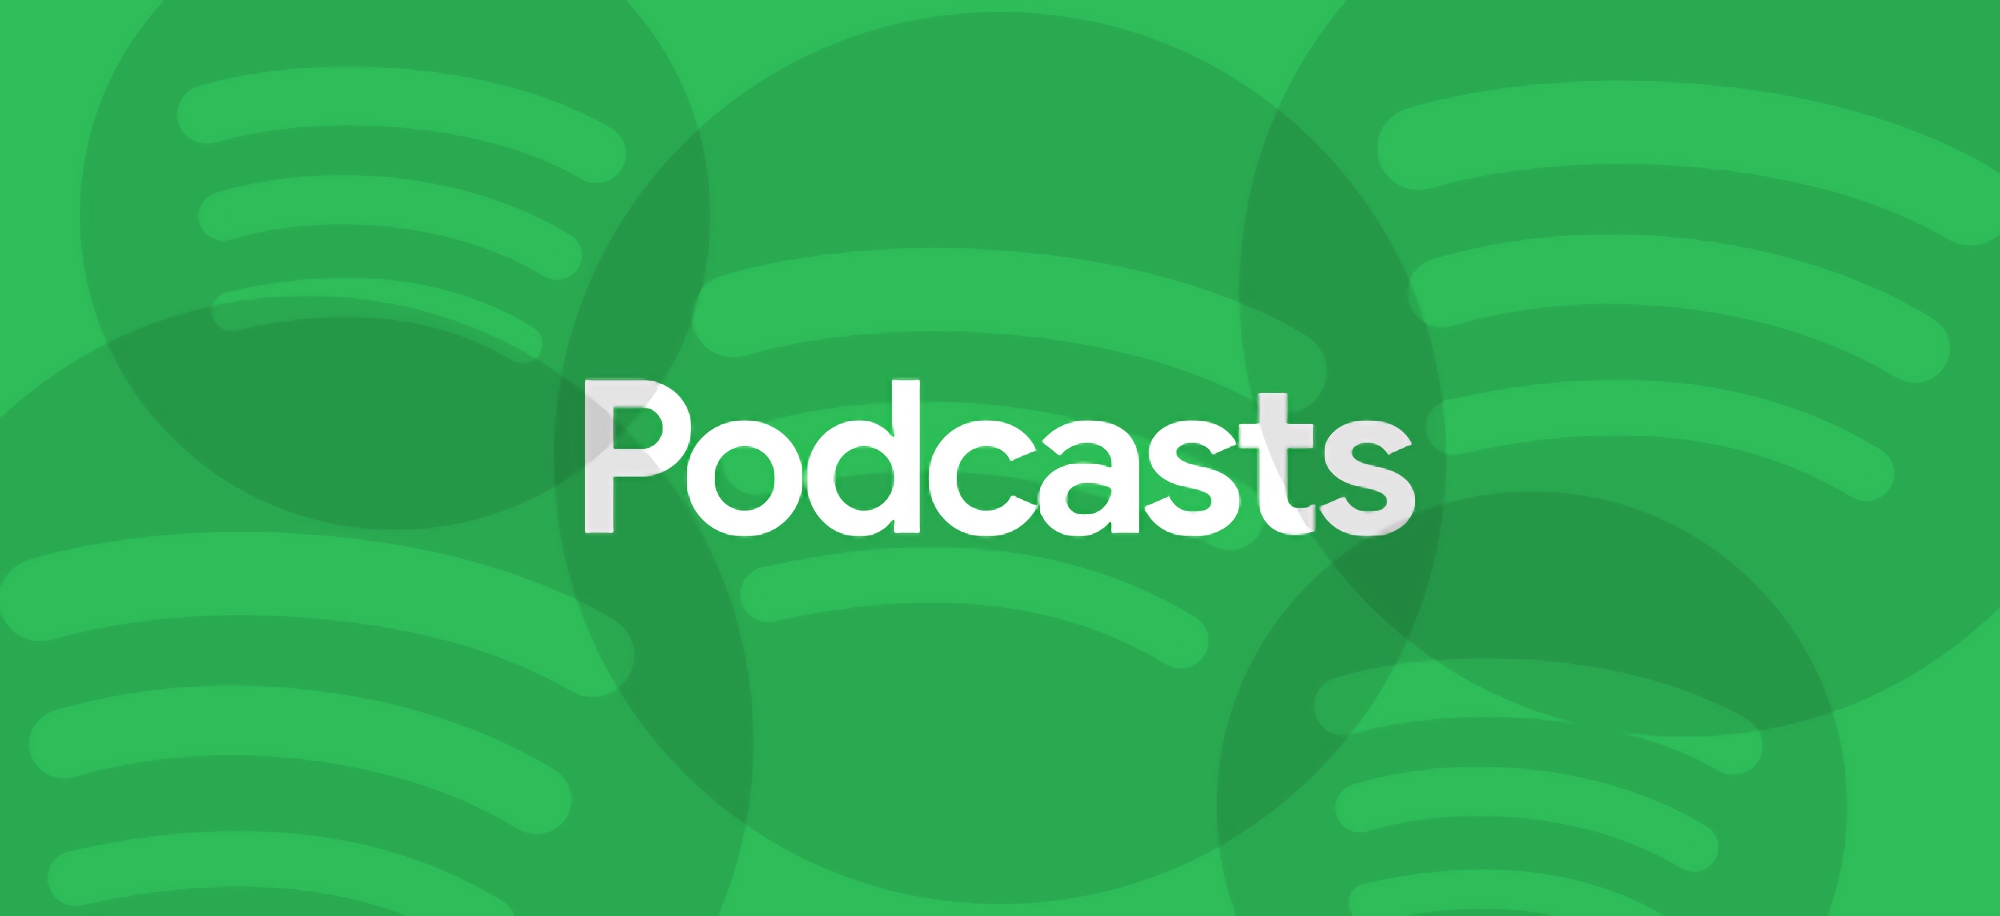 Les utilisateurs ukrainiens de Spotify ont accès aux podcasts